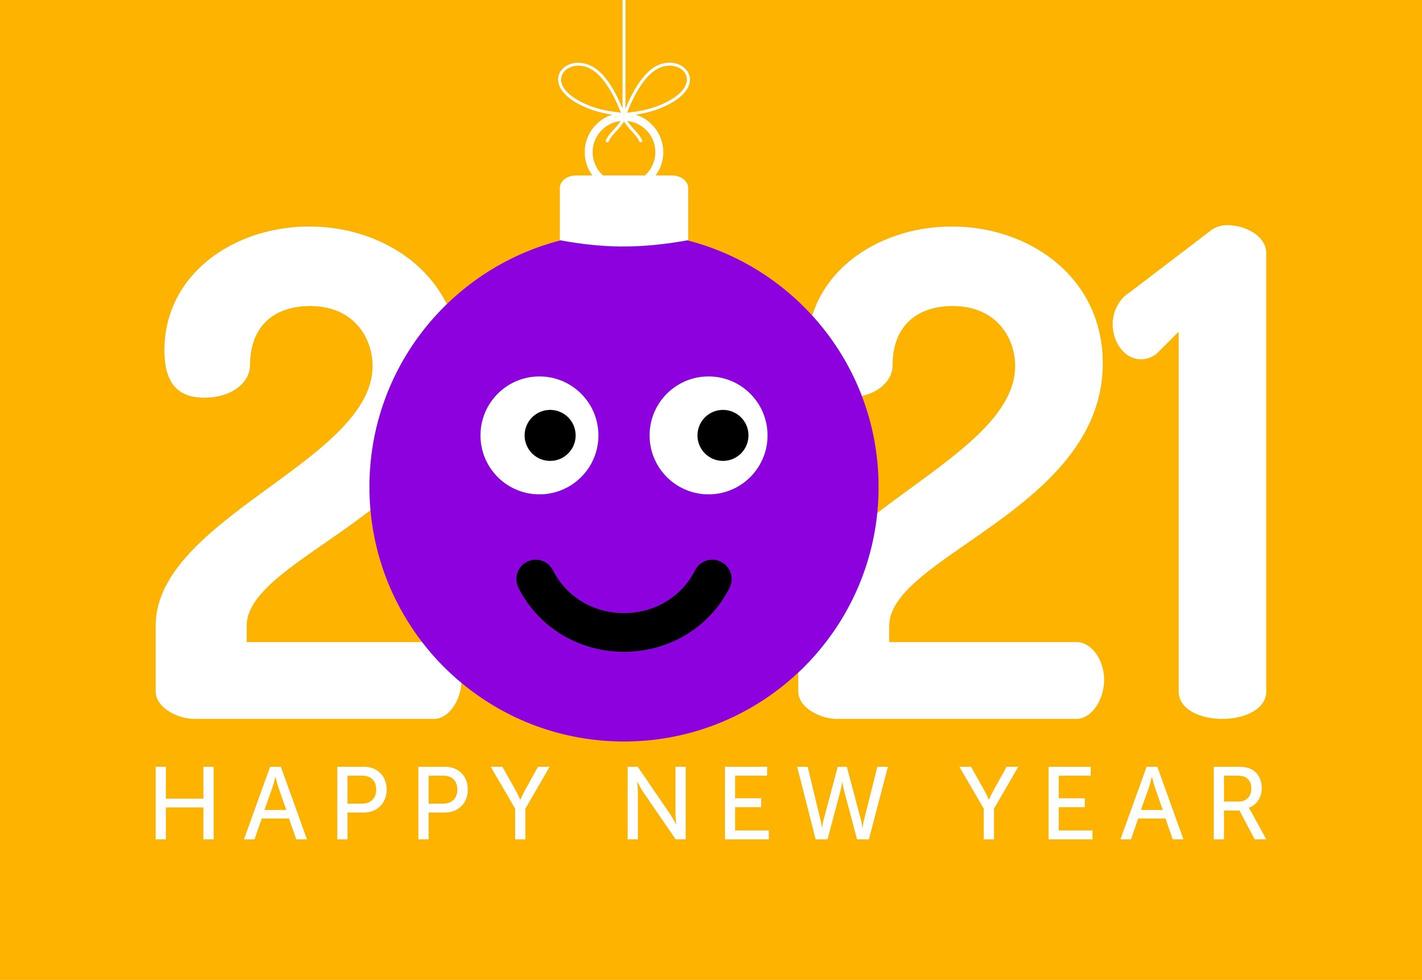 2021 saudação de ano novo com ornamento sorridente de rosto emoji vetor